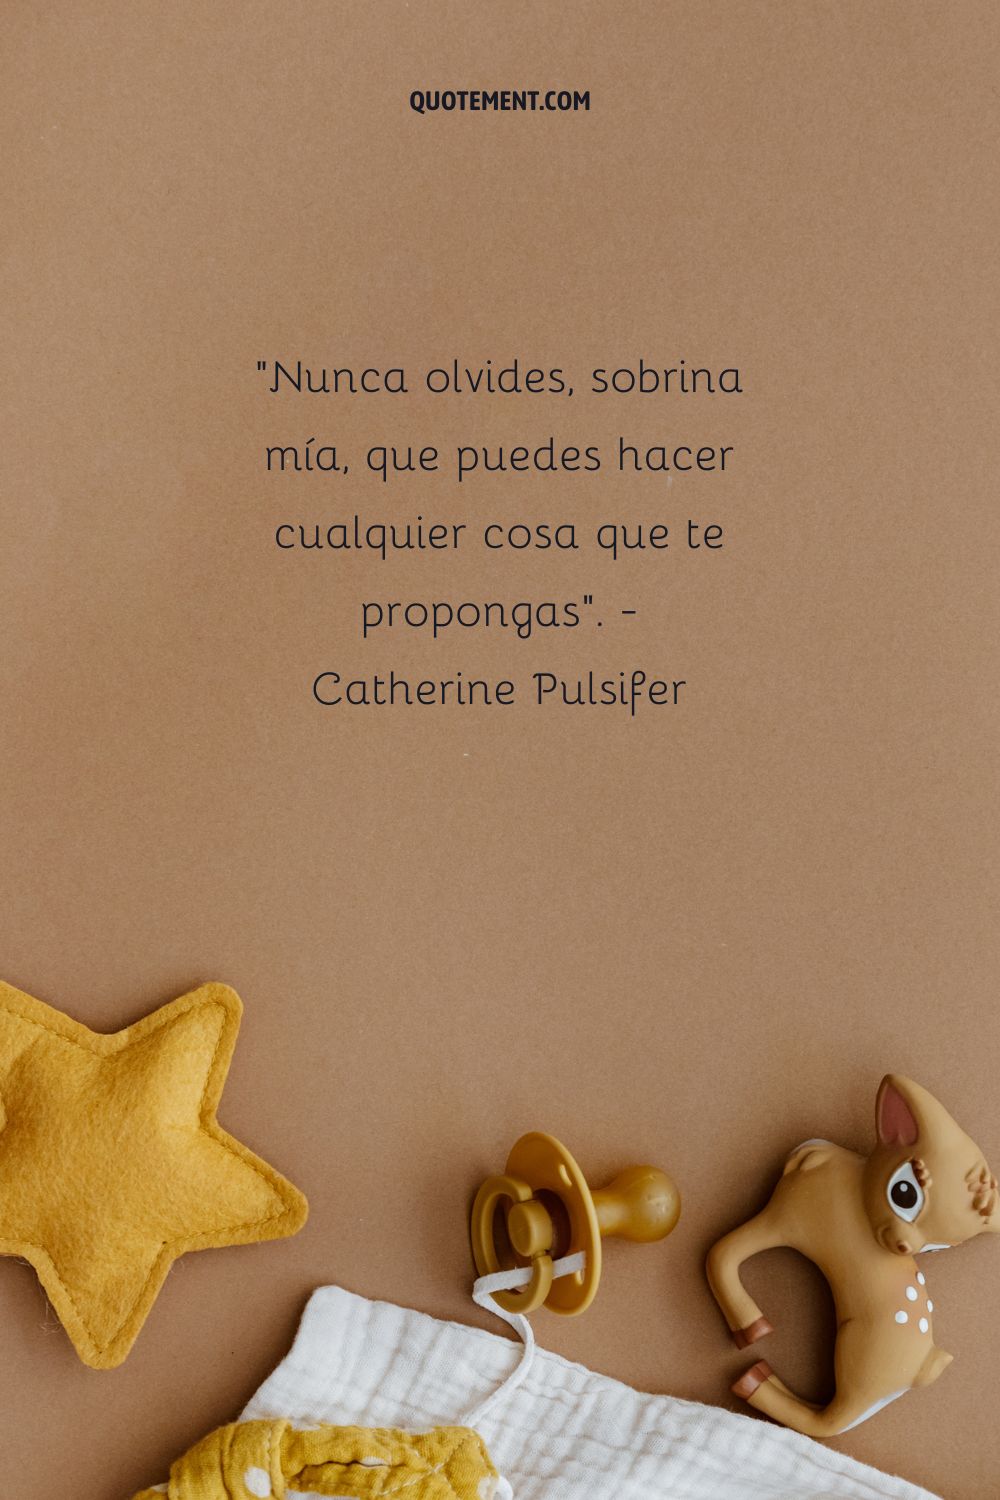 "Nunca olvides, sobrina mía, que puedes hacer cualquier cosa que te propongas".  - Catherine Pulsifer